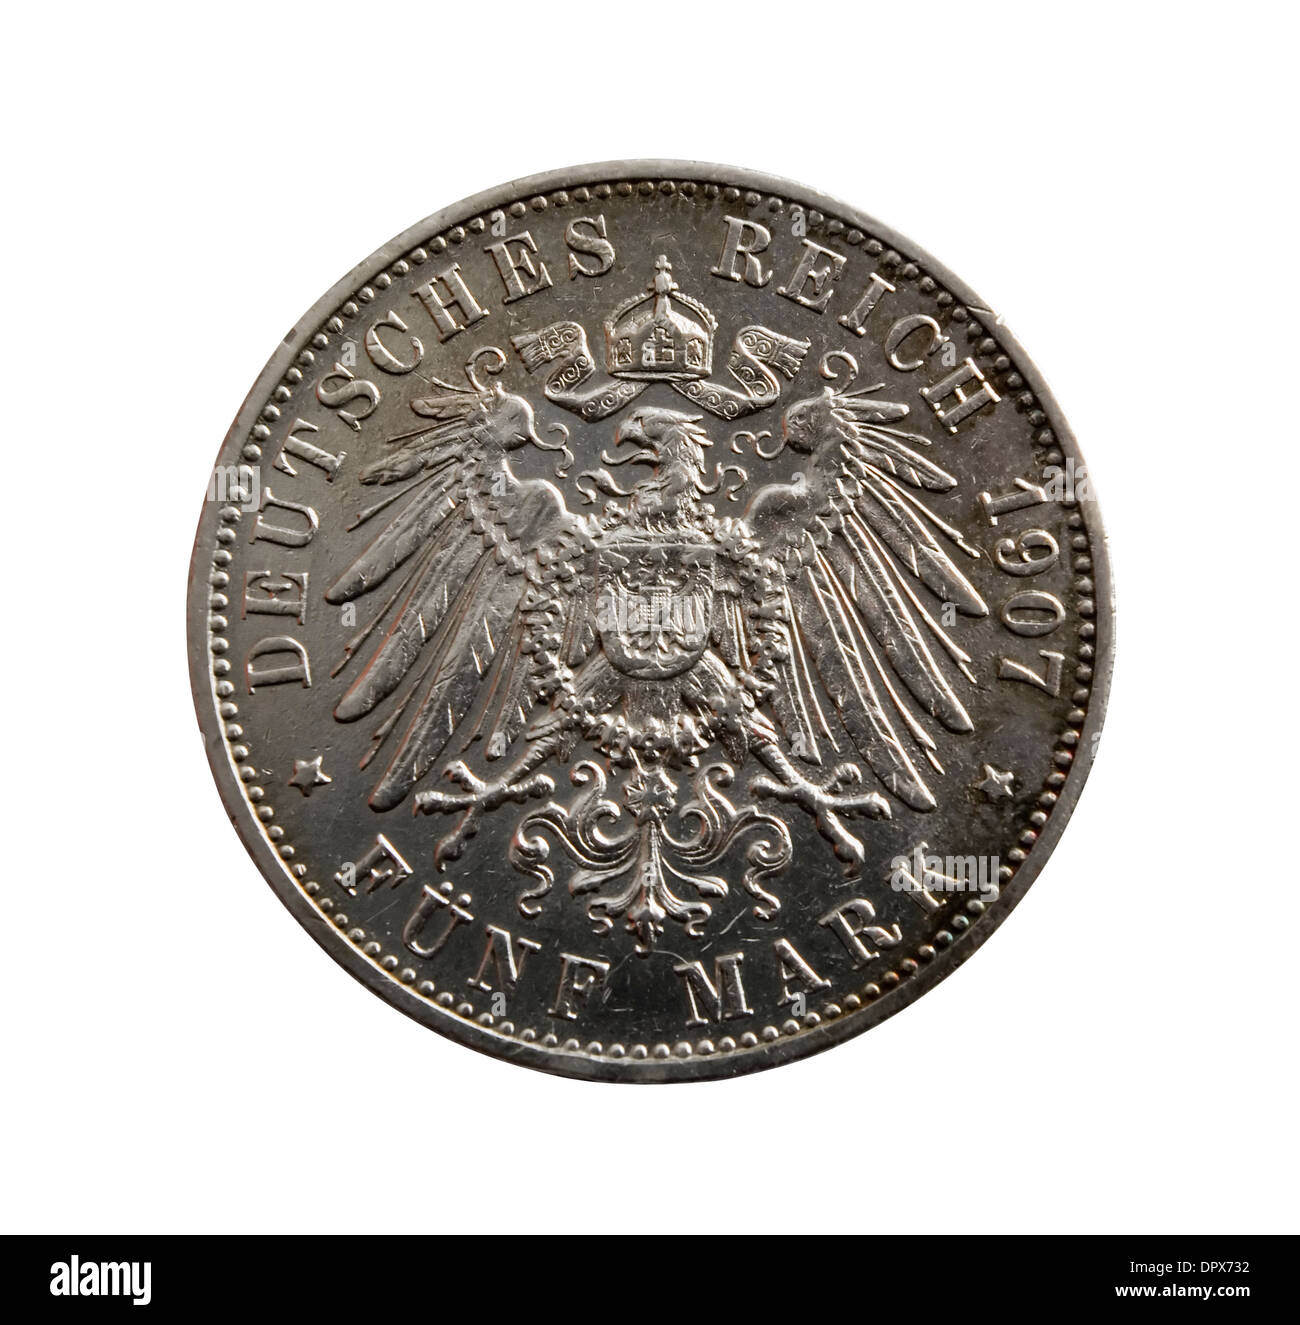 Ancienne pièce en argent - cinq marques allemandes isolated on white Banque D'Images